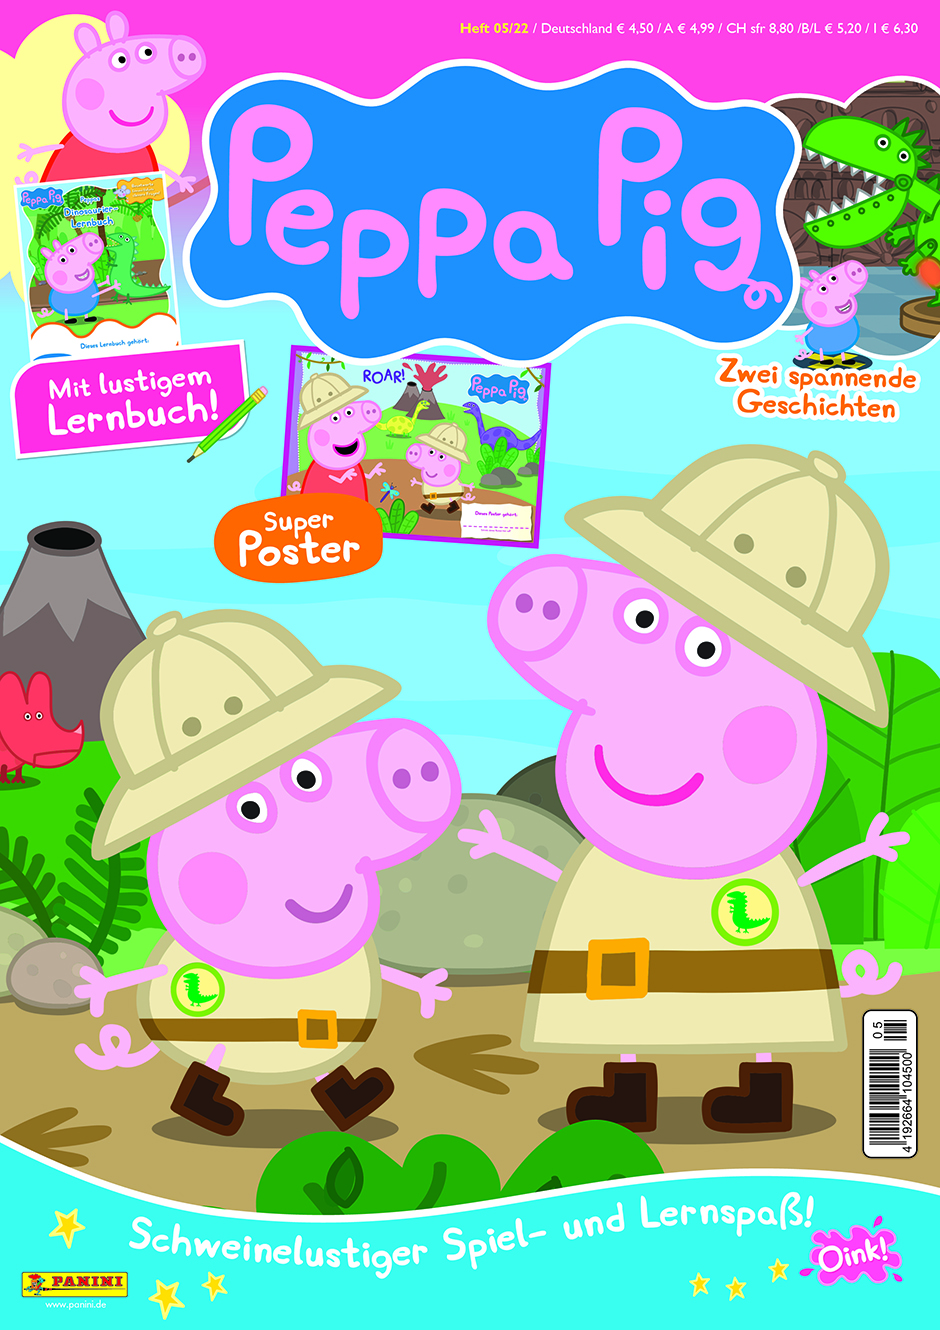 Peppa_Pig_Titel_5-22